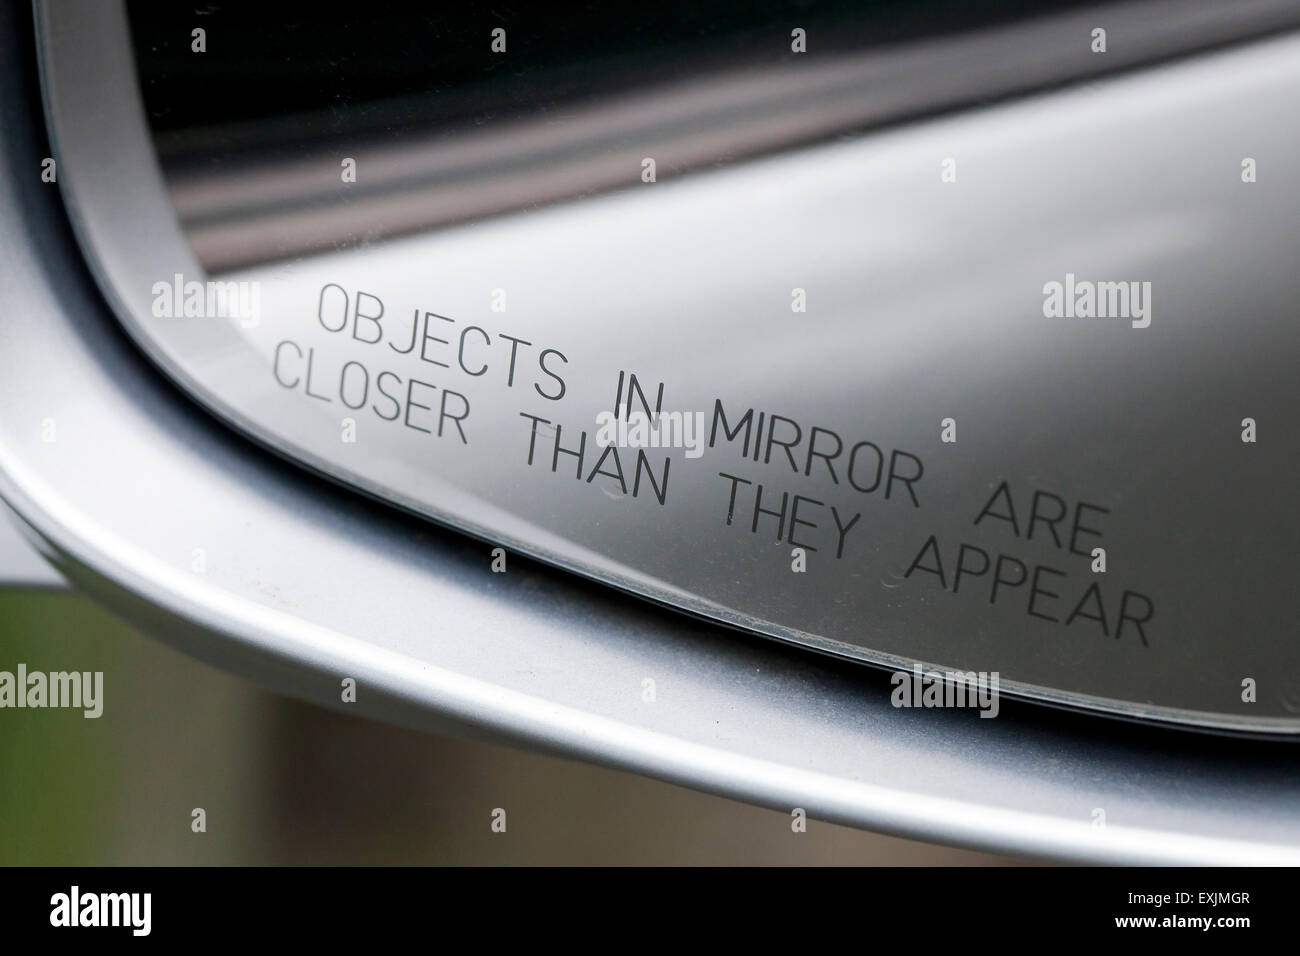 Oggetti in uno specchio sono più vicini di quanto sembra messaggio in specchio lato passeggero della vettura - USA Foto Stock